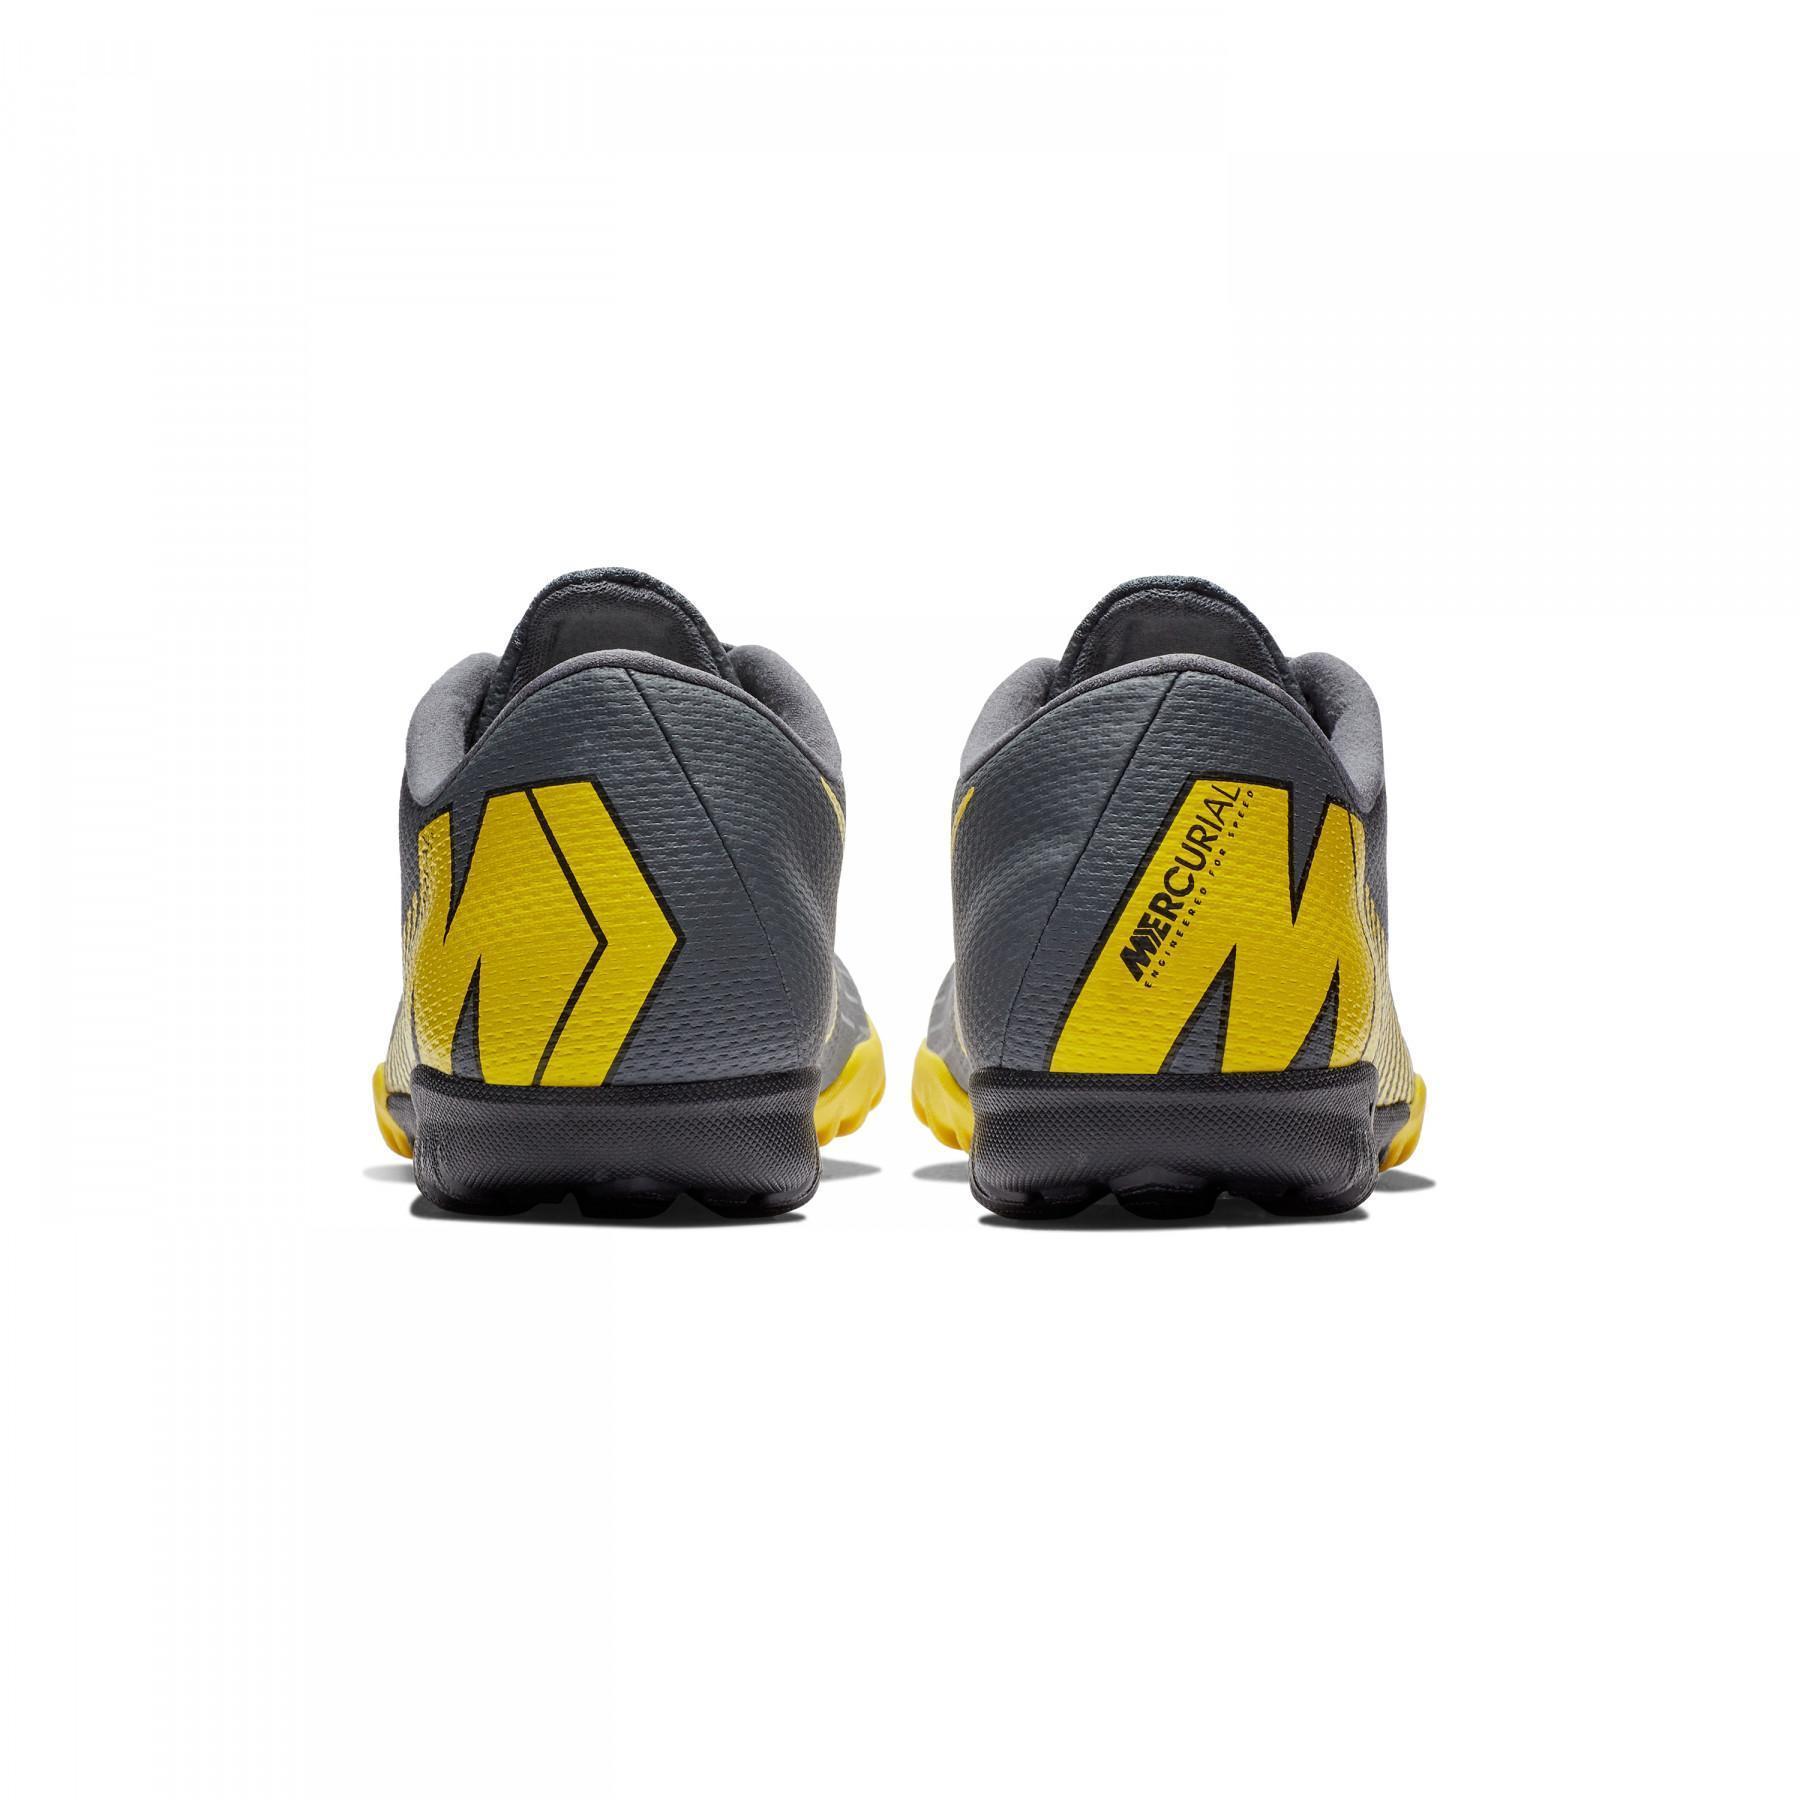 Chaussures de football Nike Mercurial VaporX 12 Academy TF